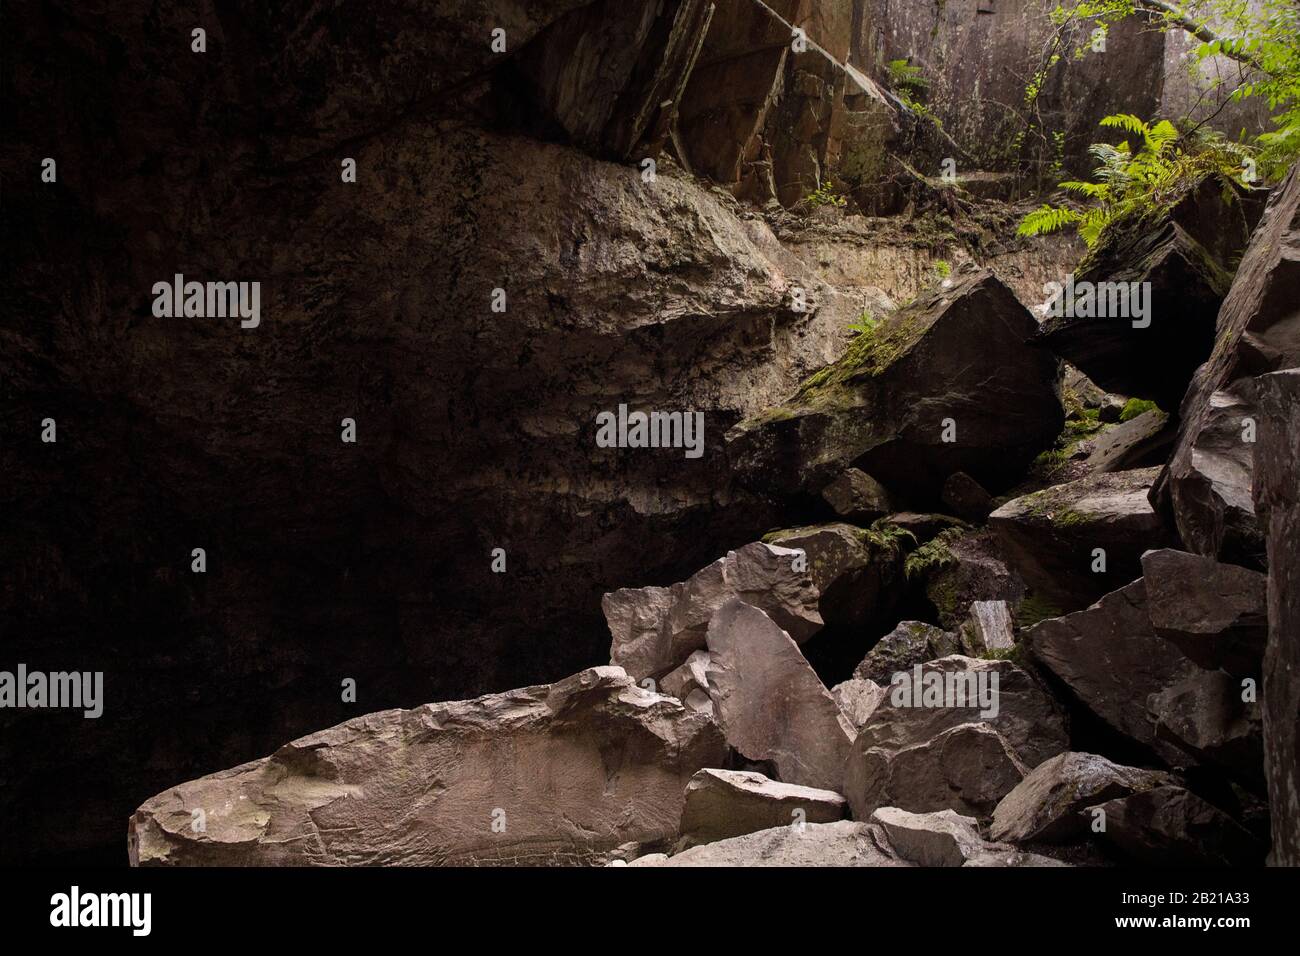 Felshaufen am Ende des dunklen Höhlenkorridors. Auslass der Höhle mit sichtbarem Licht. Nesodden, Norwegen. Stockfoto